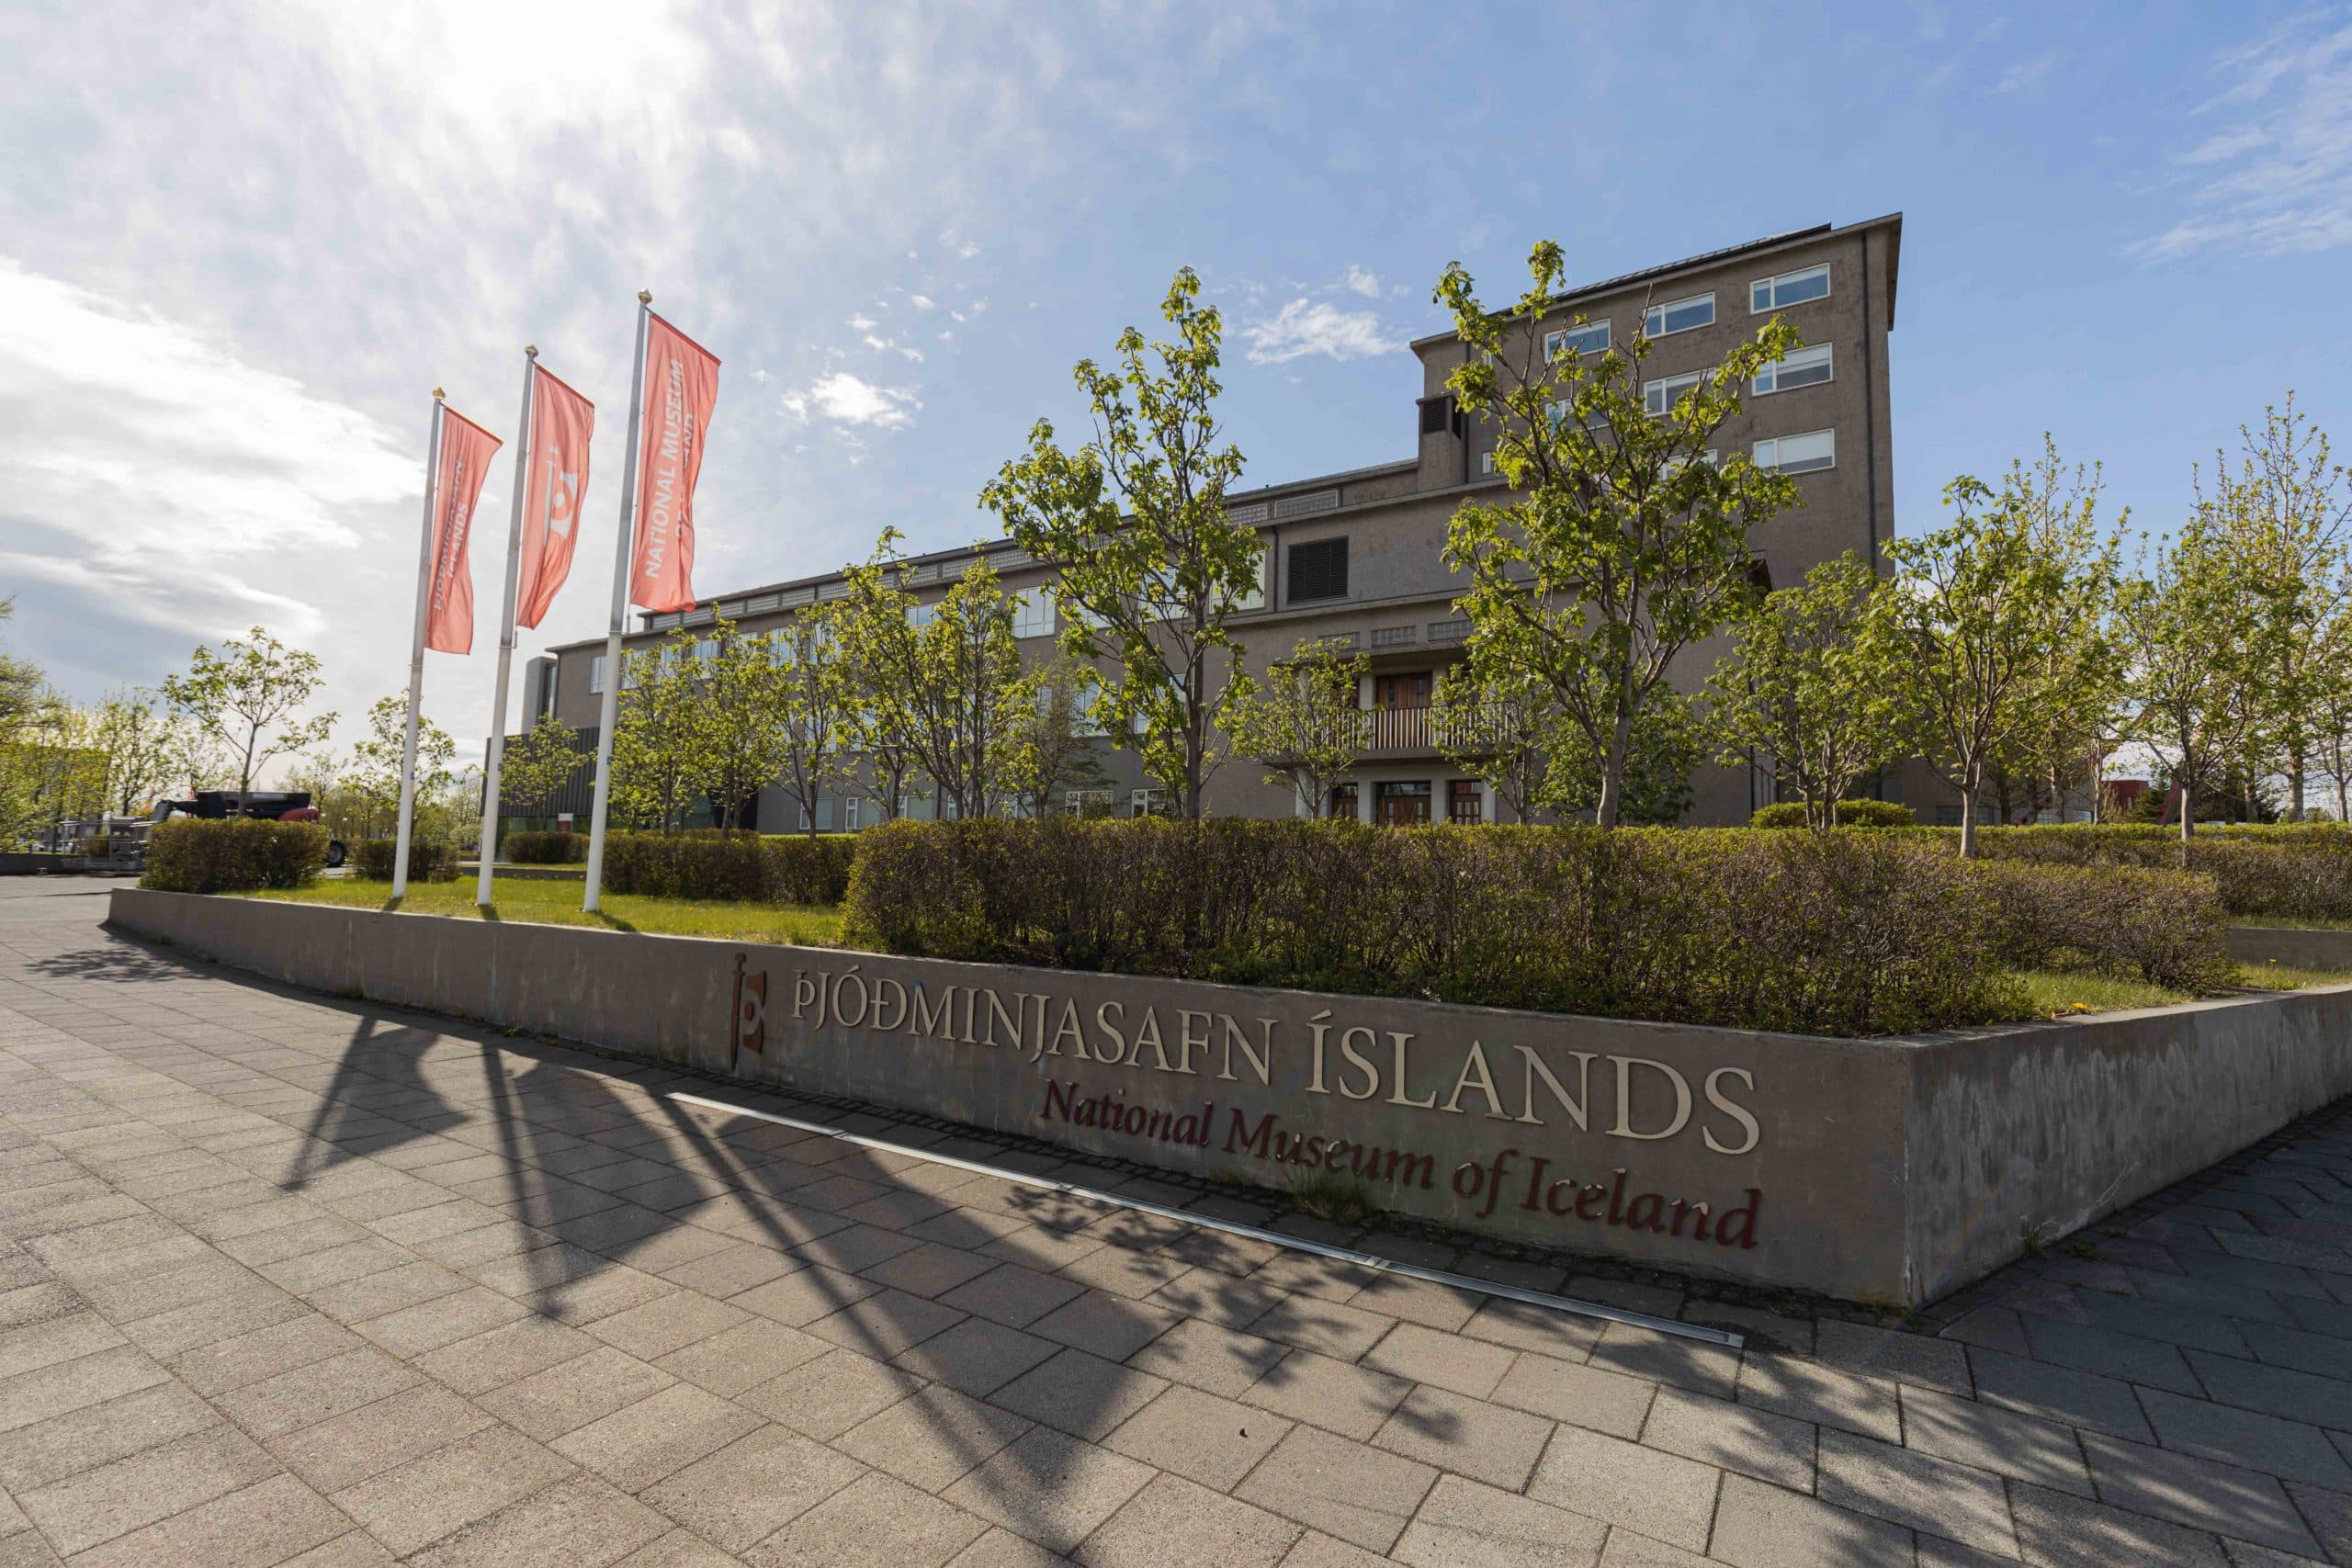 national museum of iceland þjóðminjasafn